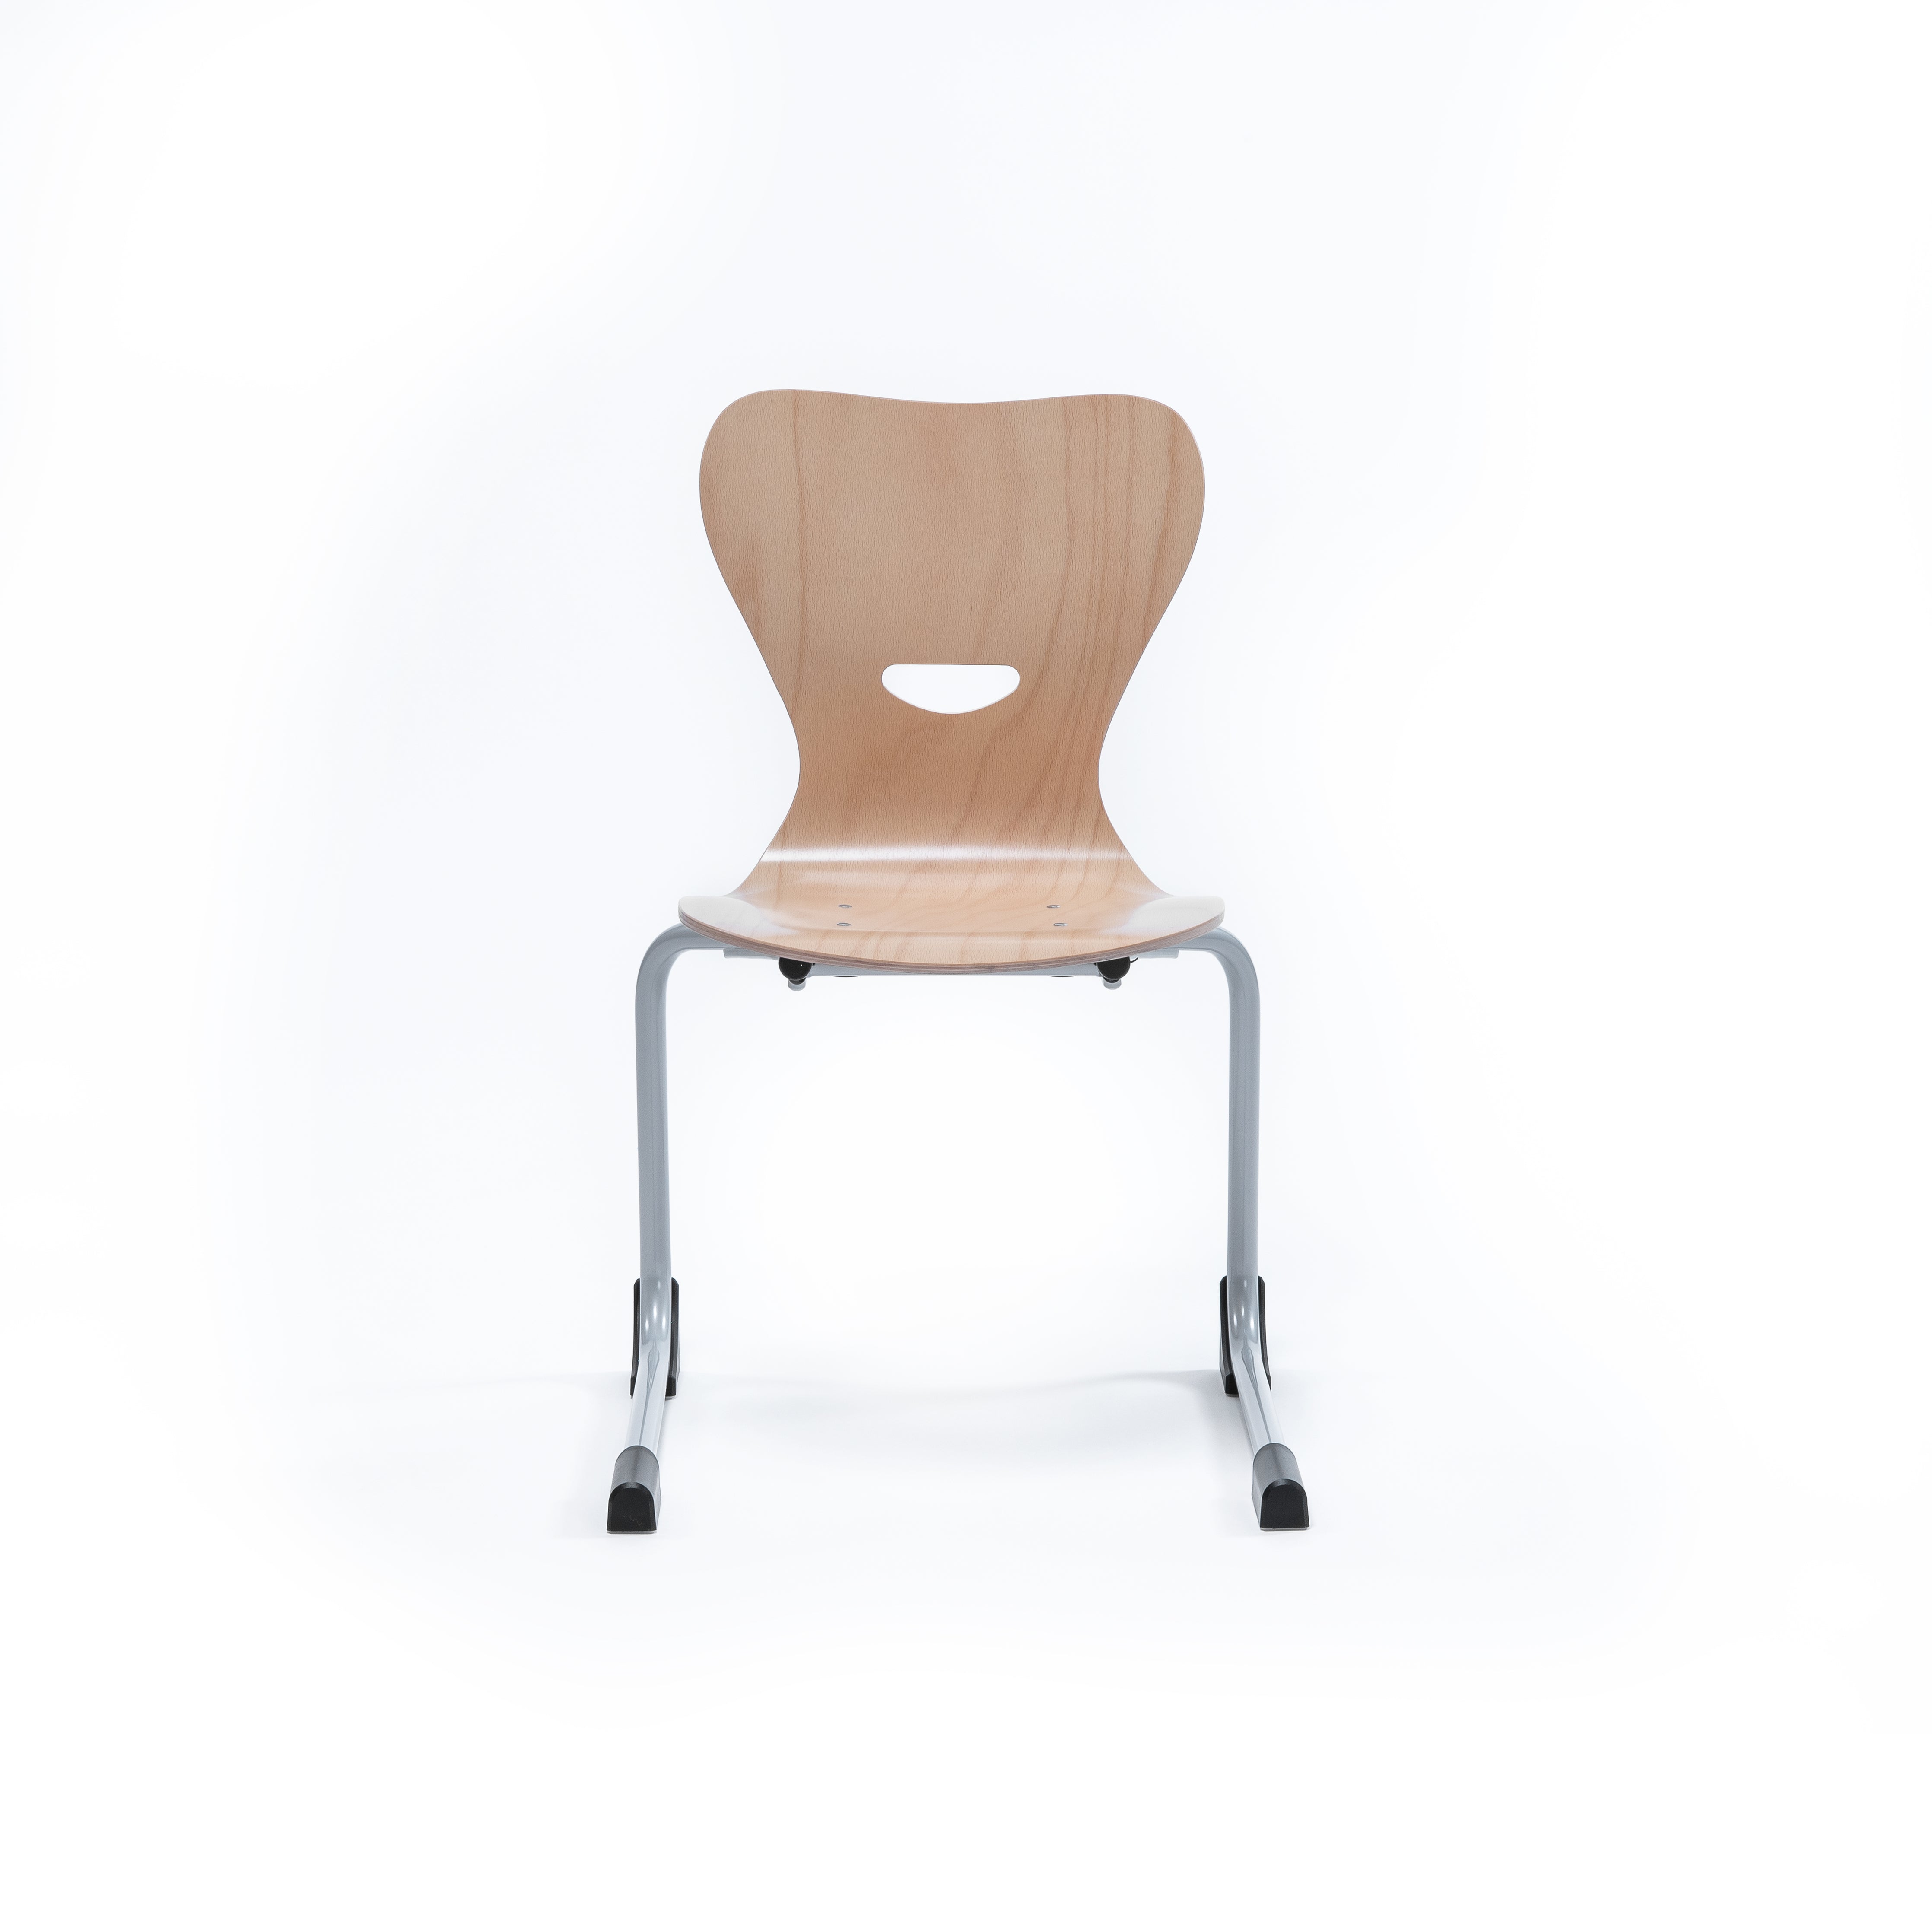 Mehrzweckstuhl Schule mit Sitzschale aus Holz und Metallgestell